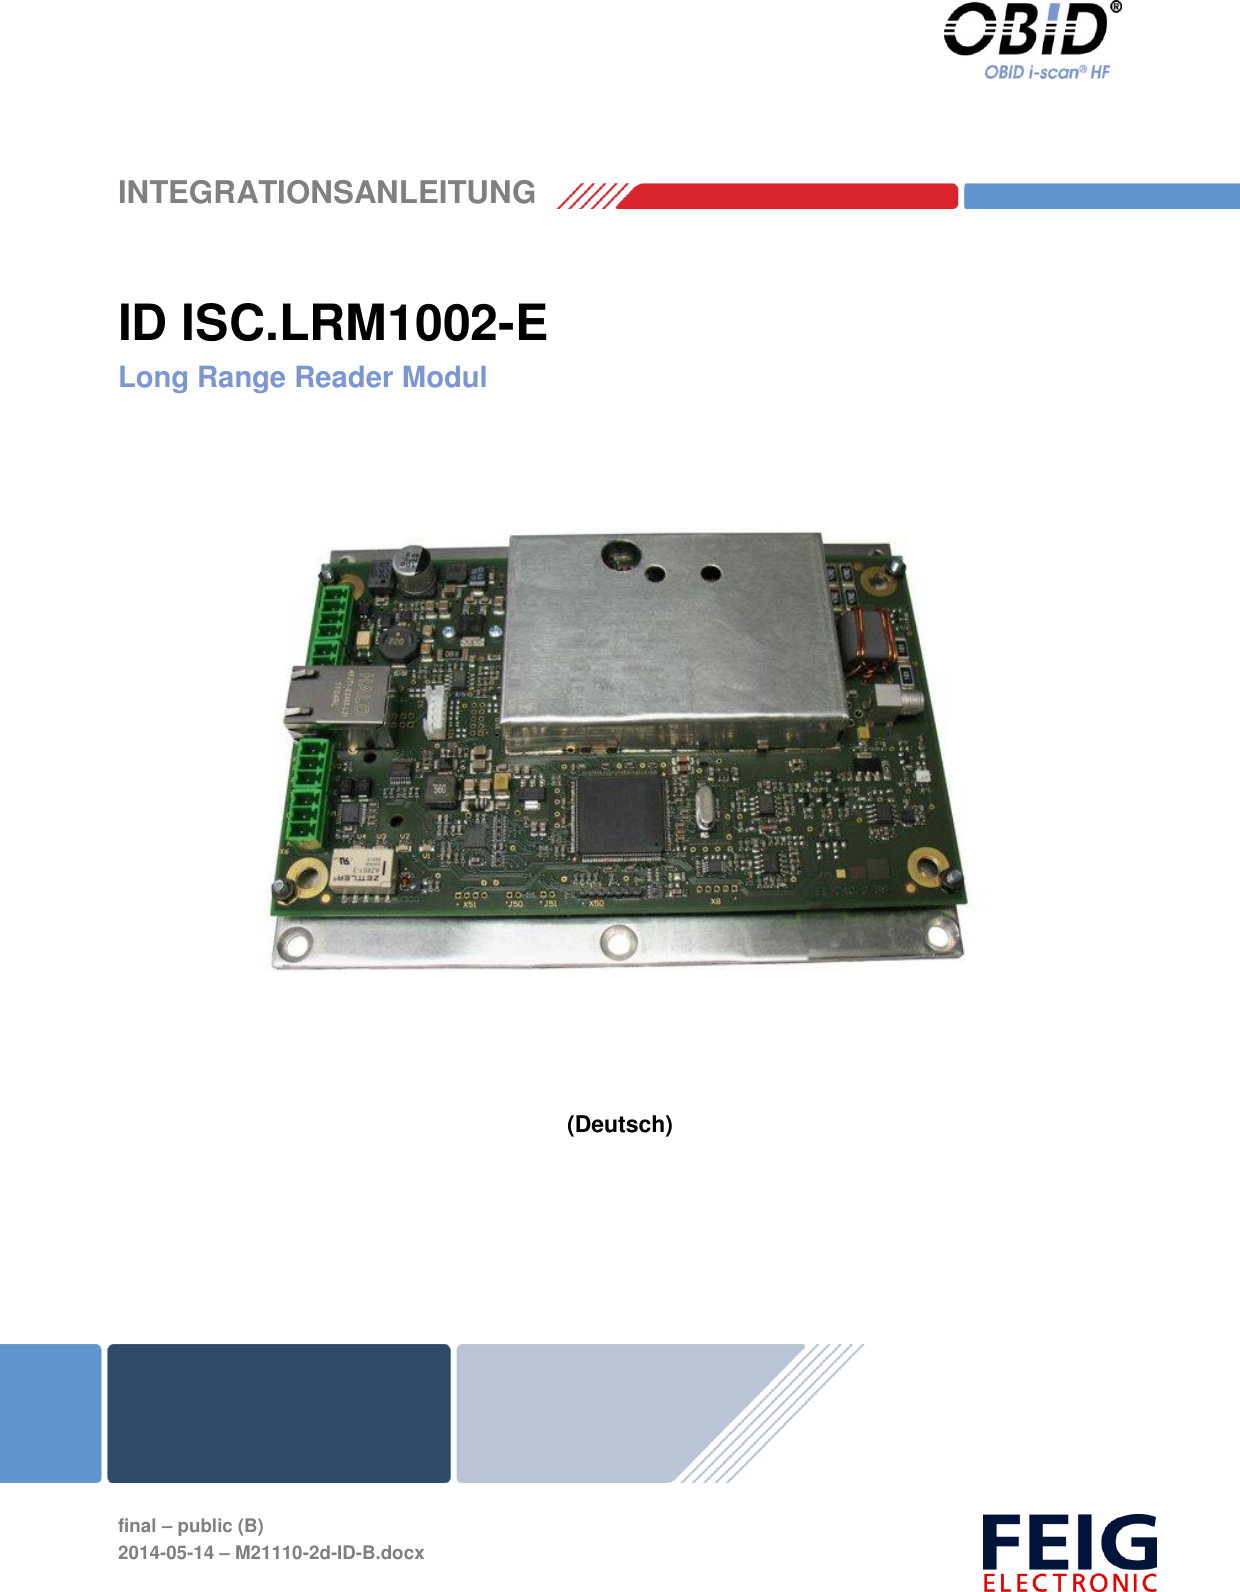    INTEGRATIONSANLEITUNG   final – public (B) 2014-05-14 – M21110-2d-ID-B.docx   ID ISC.LRM1002-E Long Range Reader Modul      (Deutsch) 